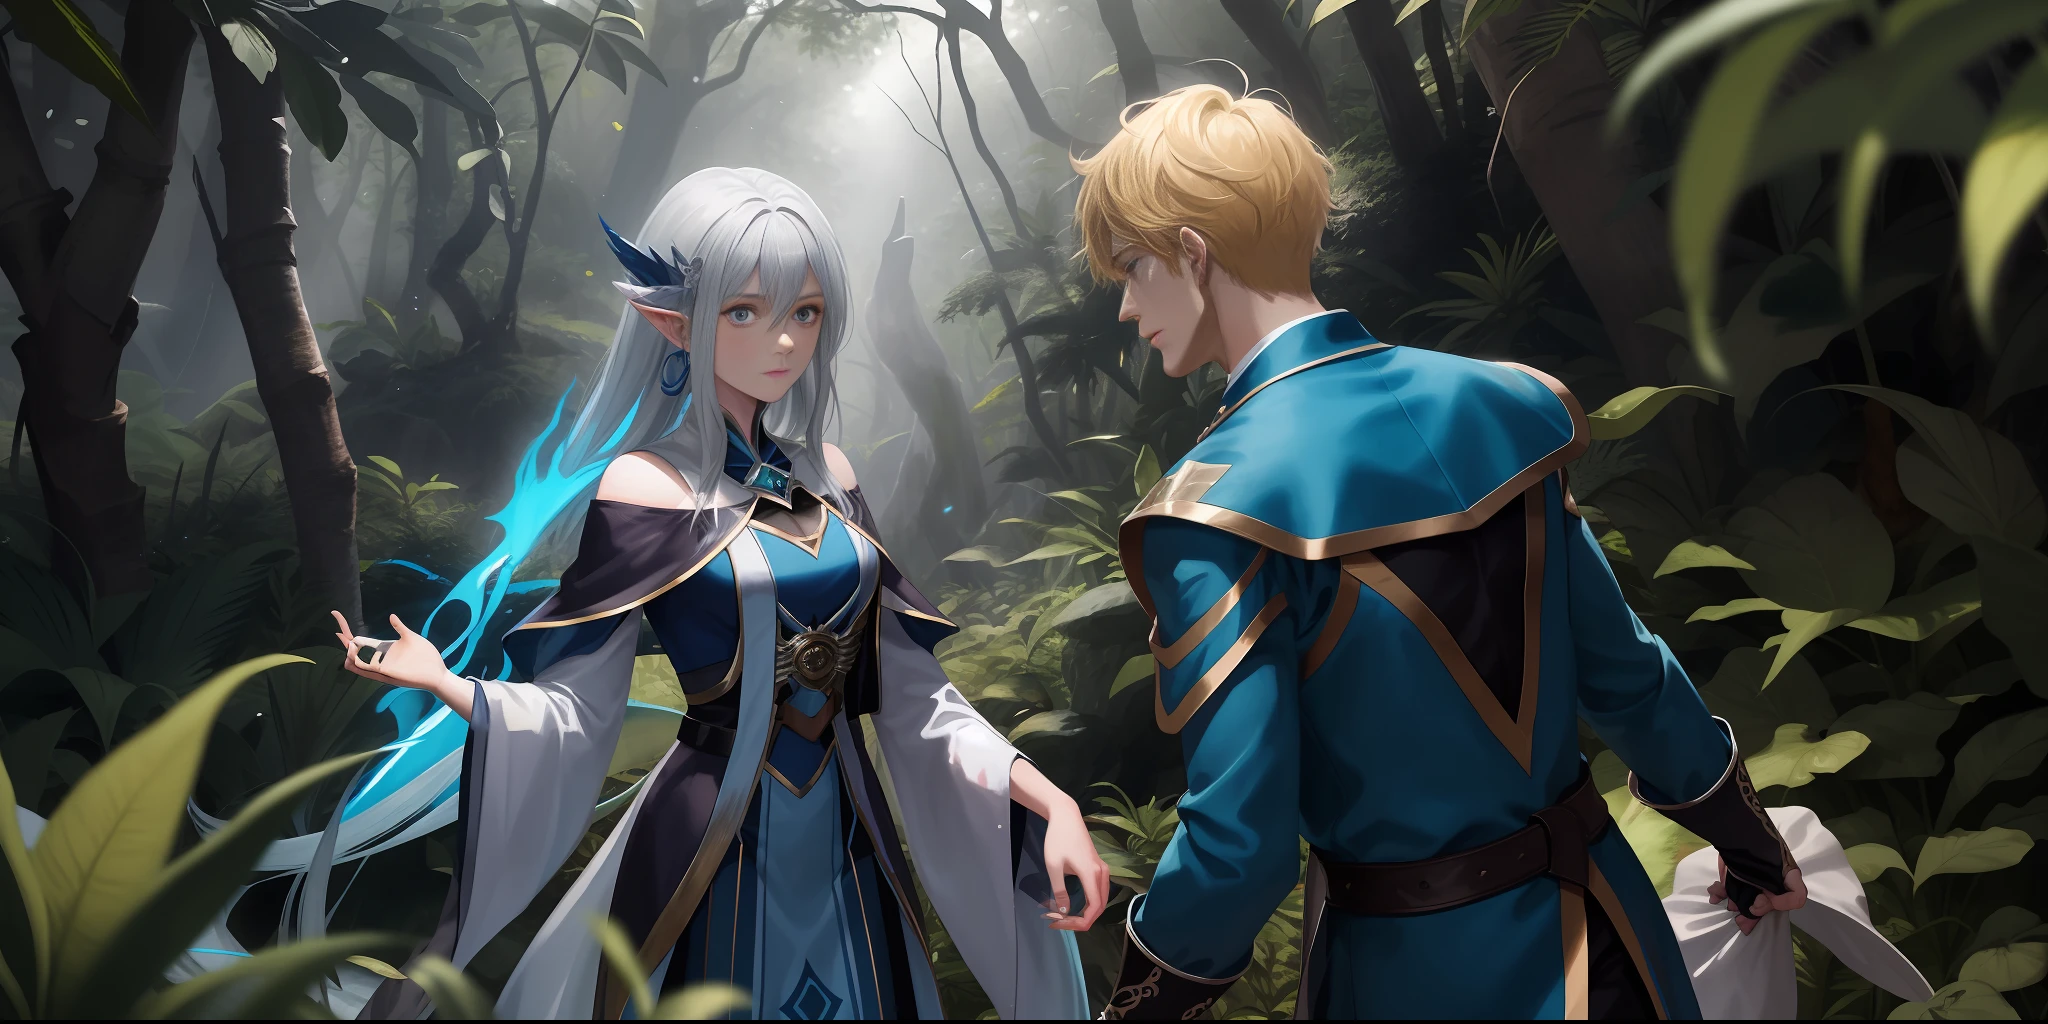 personnages homme blond avec des vêtements de magicien bleu, regardant une nymphe aux cheveux argentés lui tendre la main à moyenne distance, au centre de la forêt MÁGICO, scène romantique